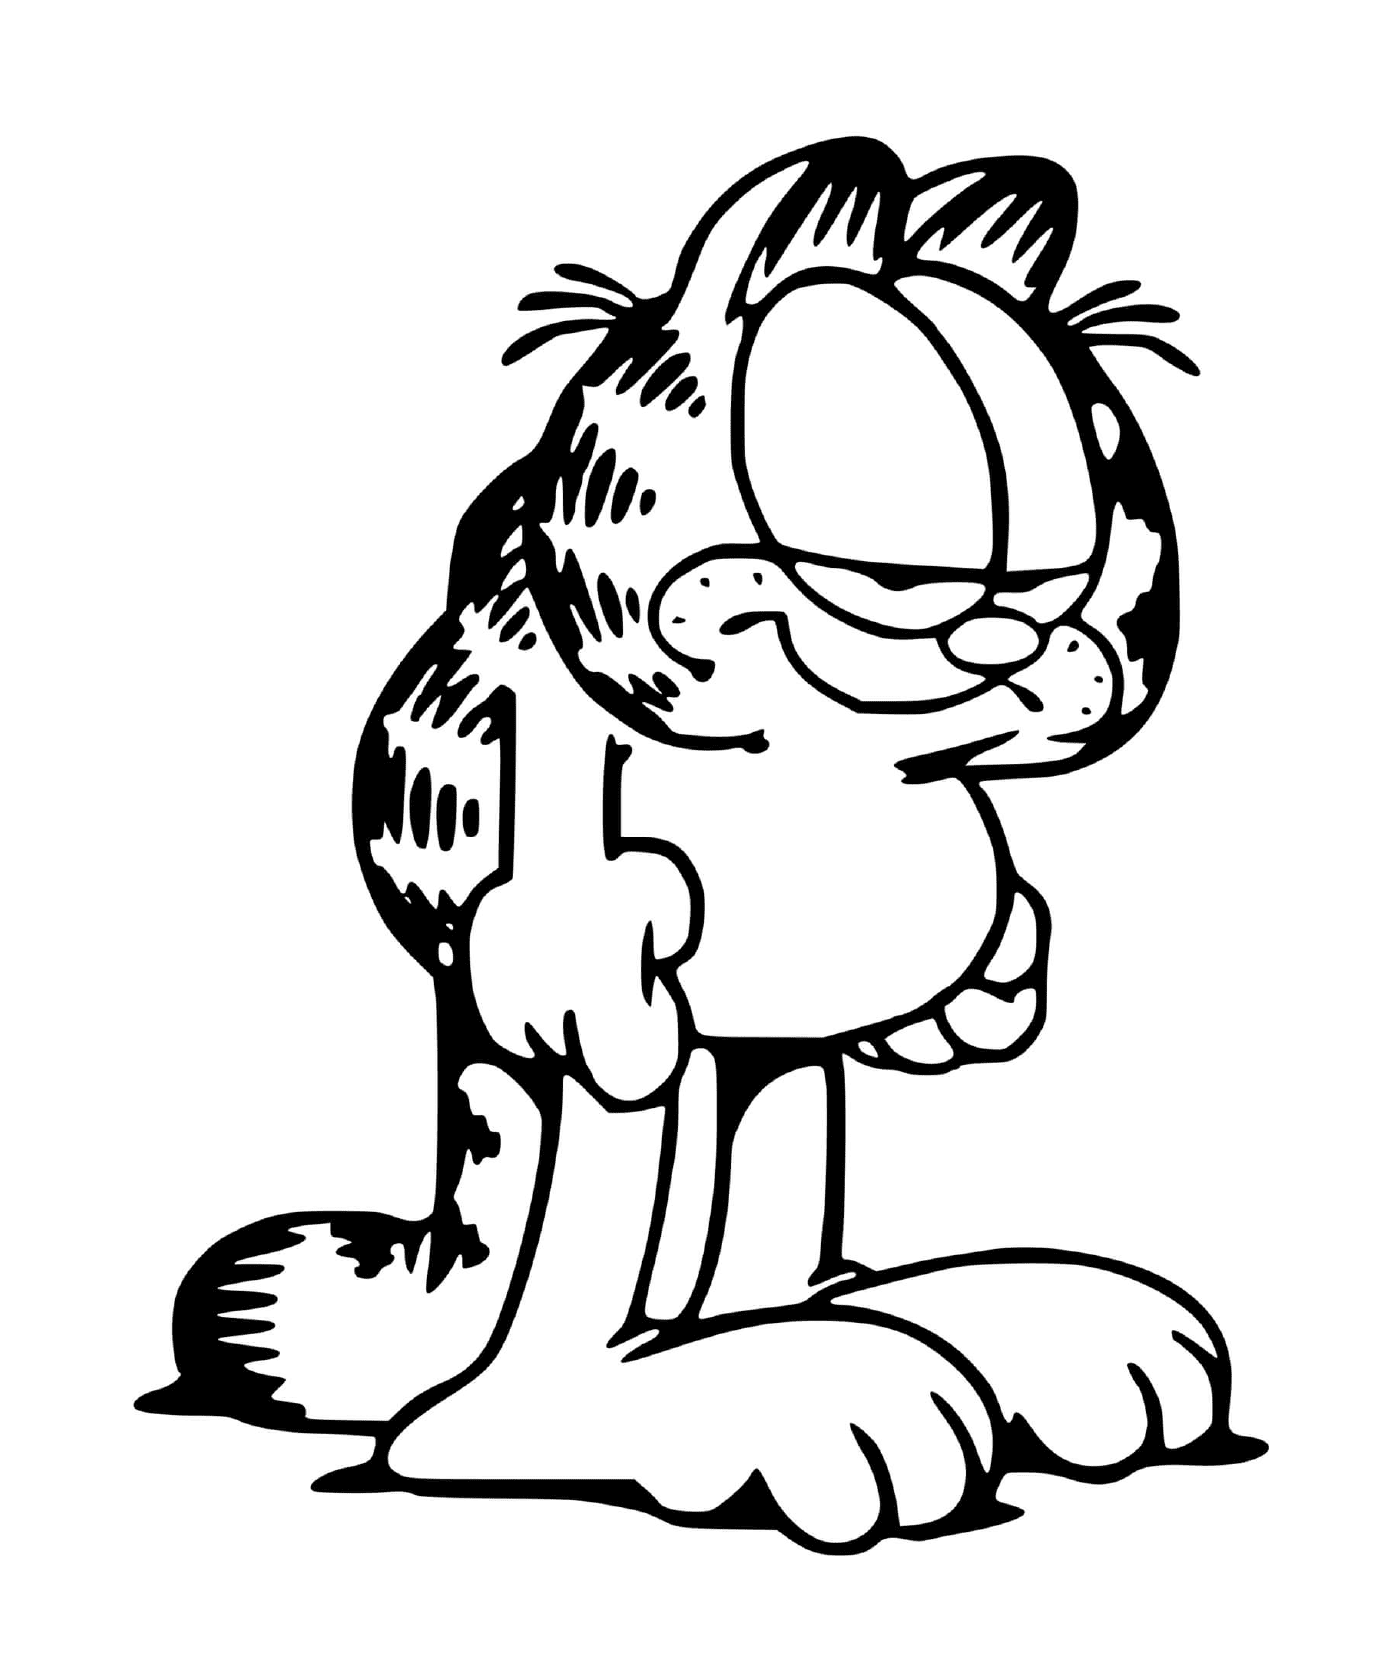  Garfield sempre stanco ed esausto 